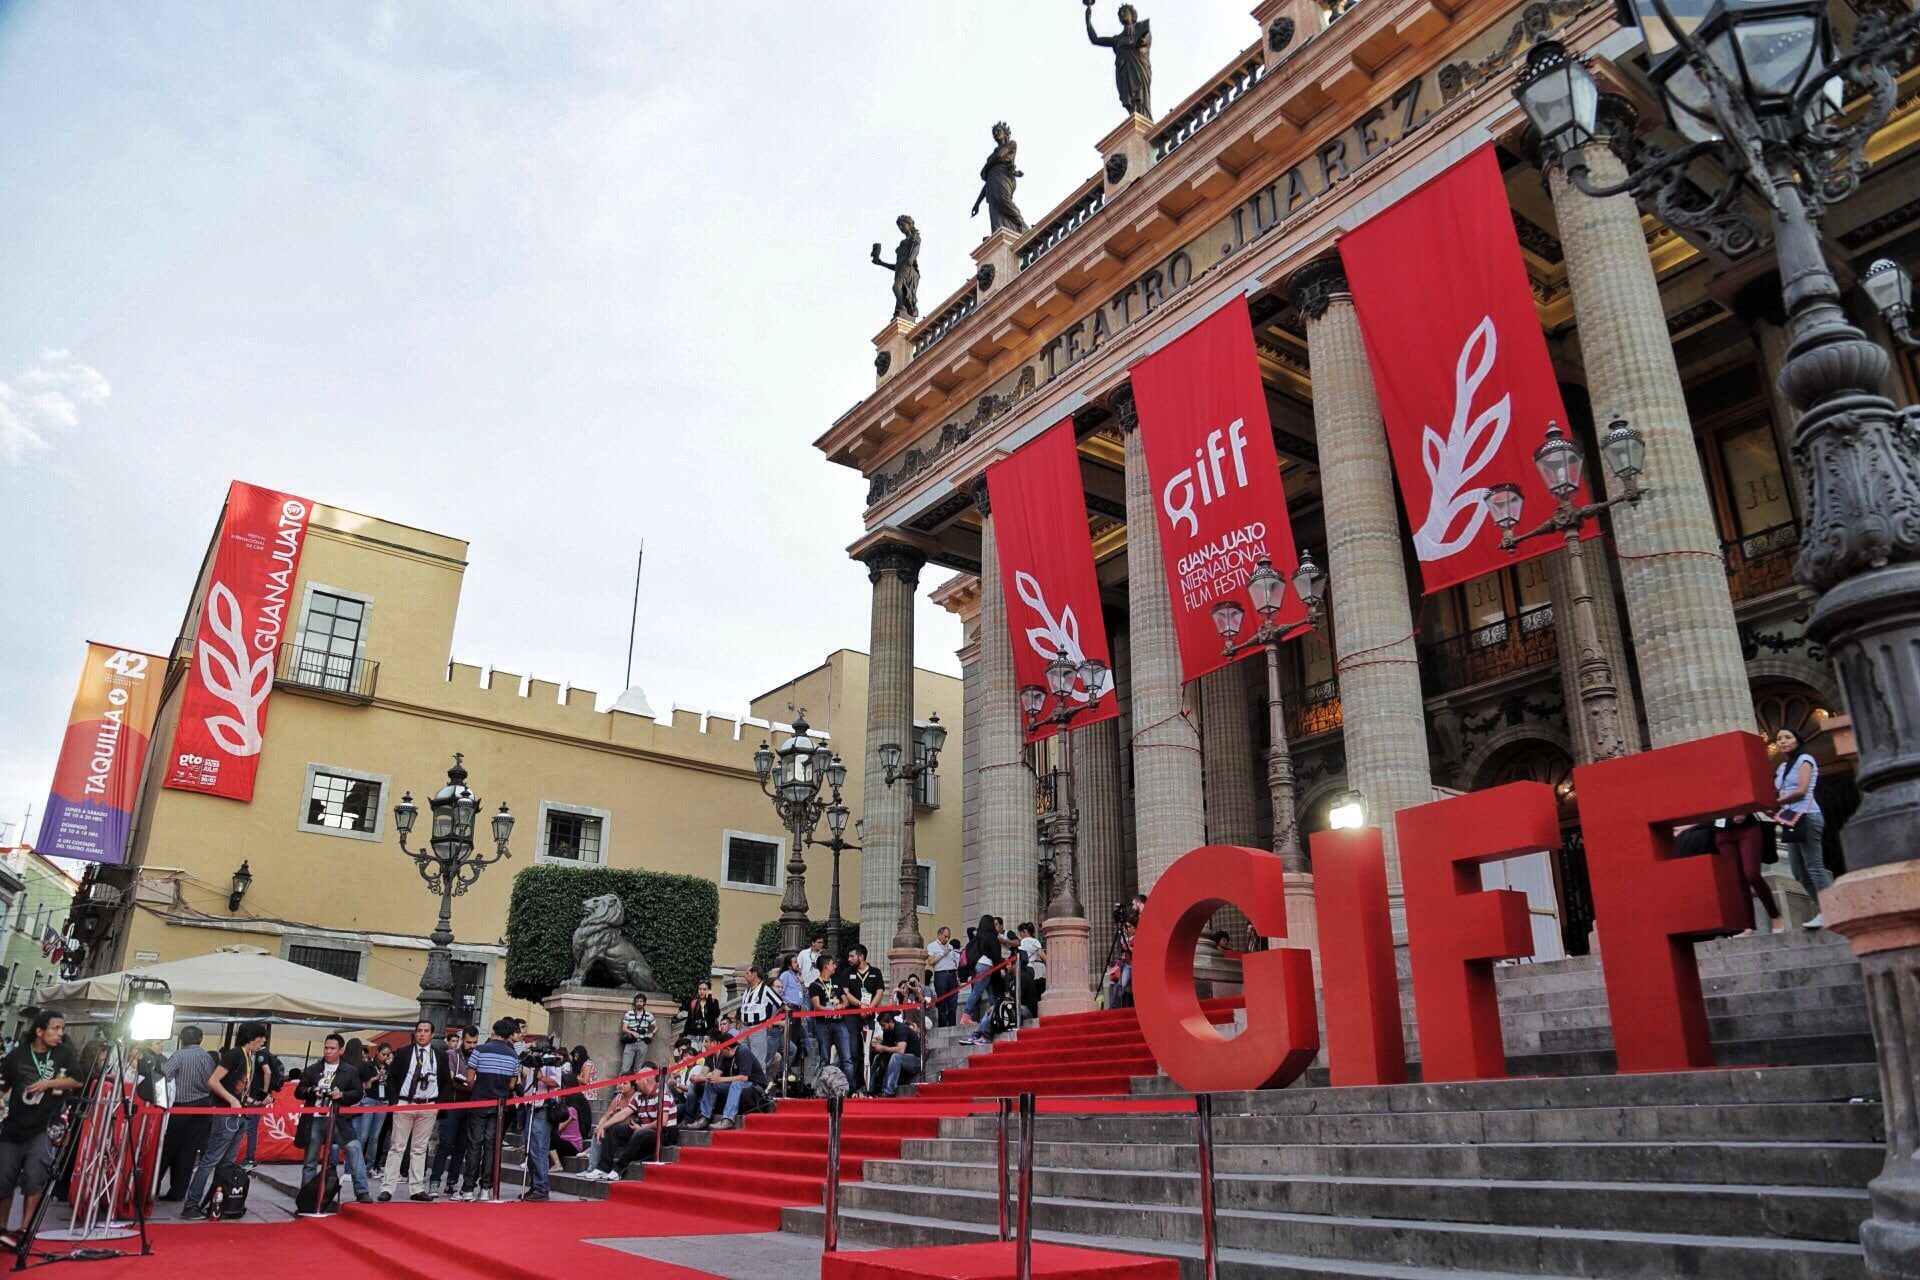 Noche de gala en celebración de la cultura polaca #GIFF2014